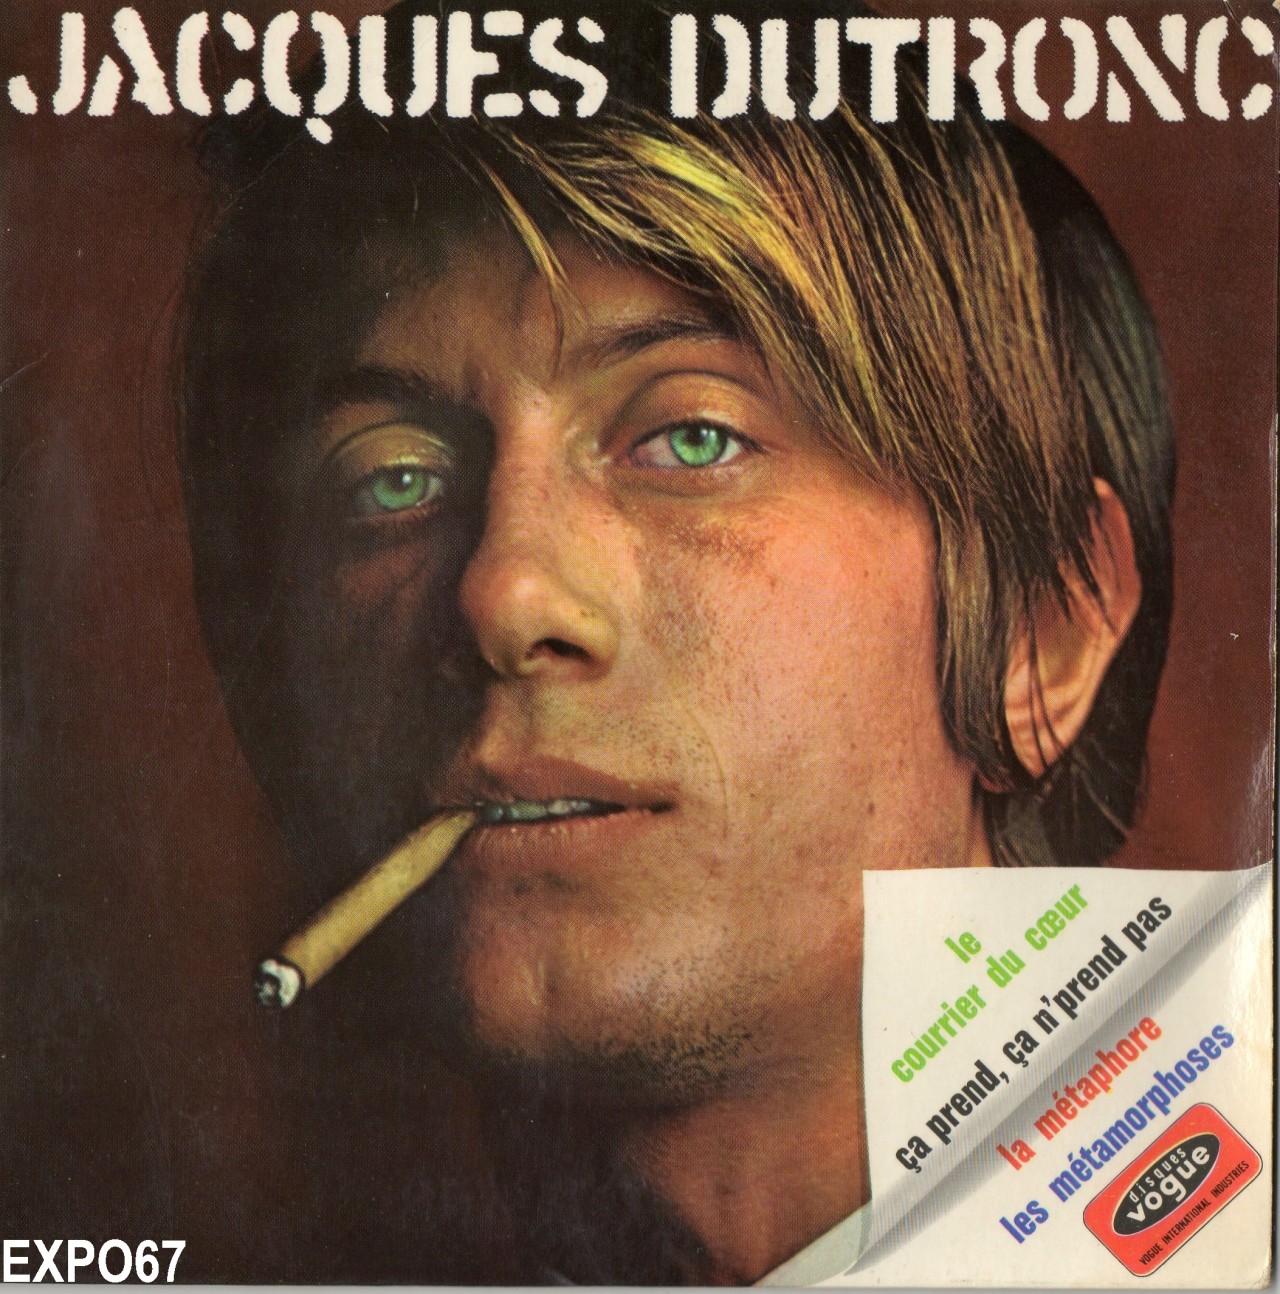 Jacques+Dutronc+-+Les+Metamorphoses.jpg